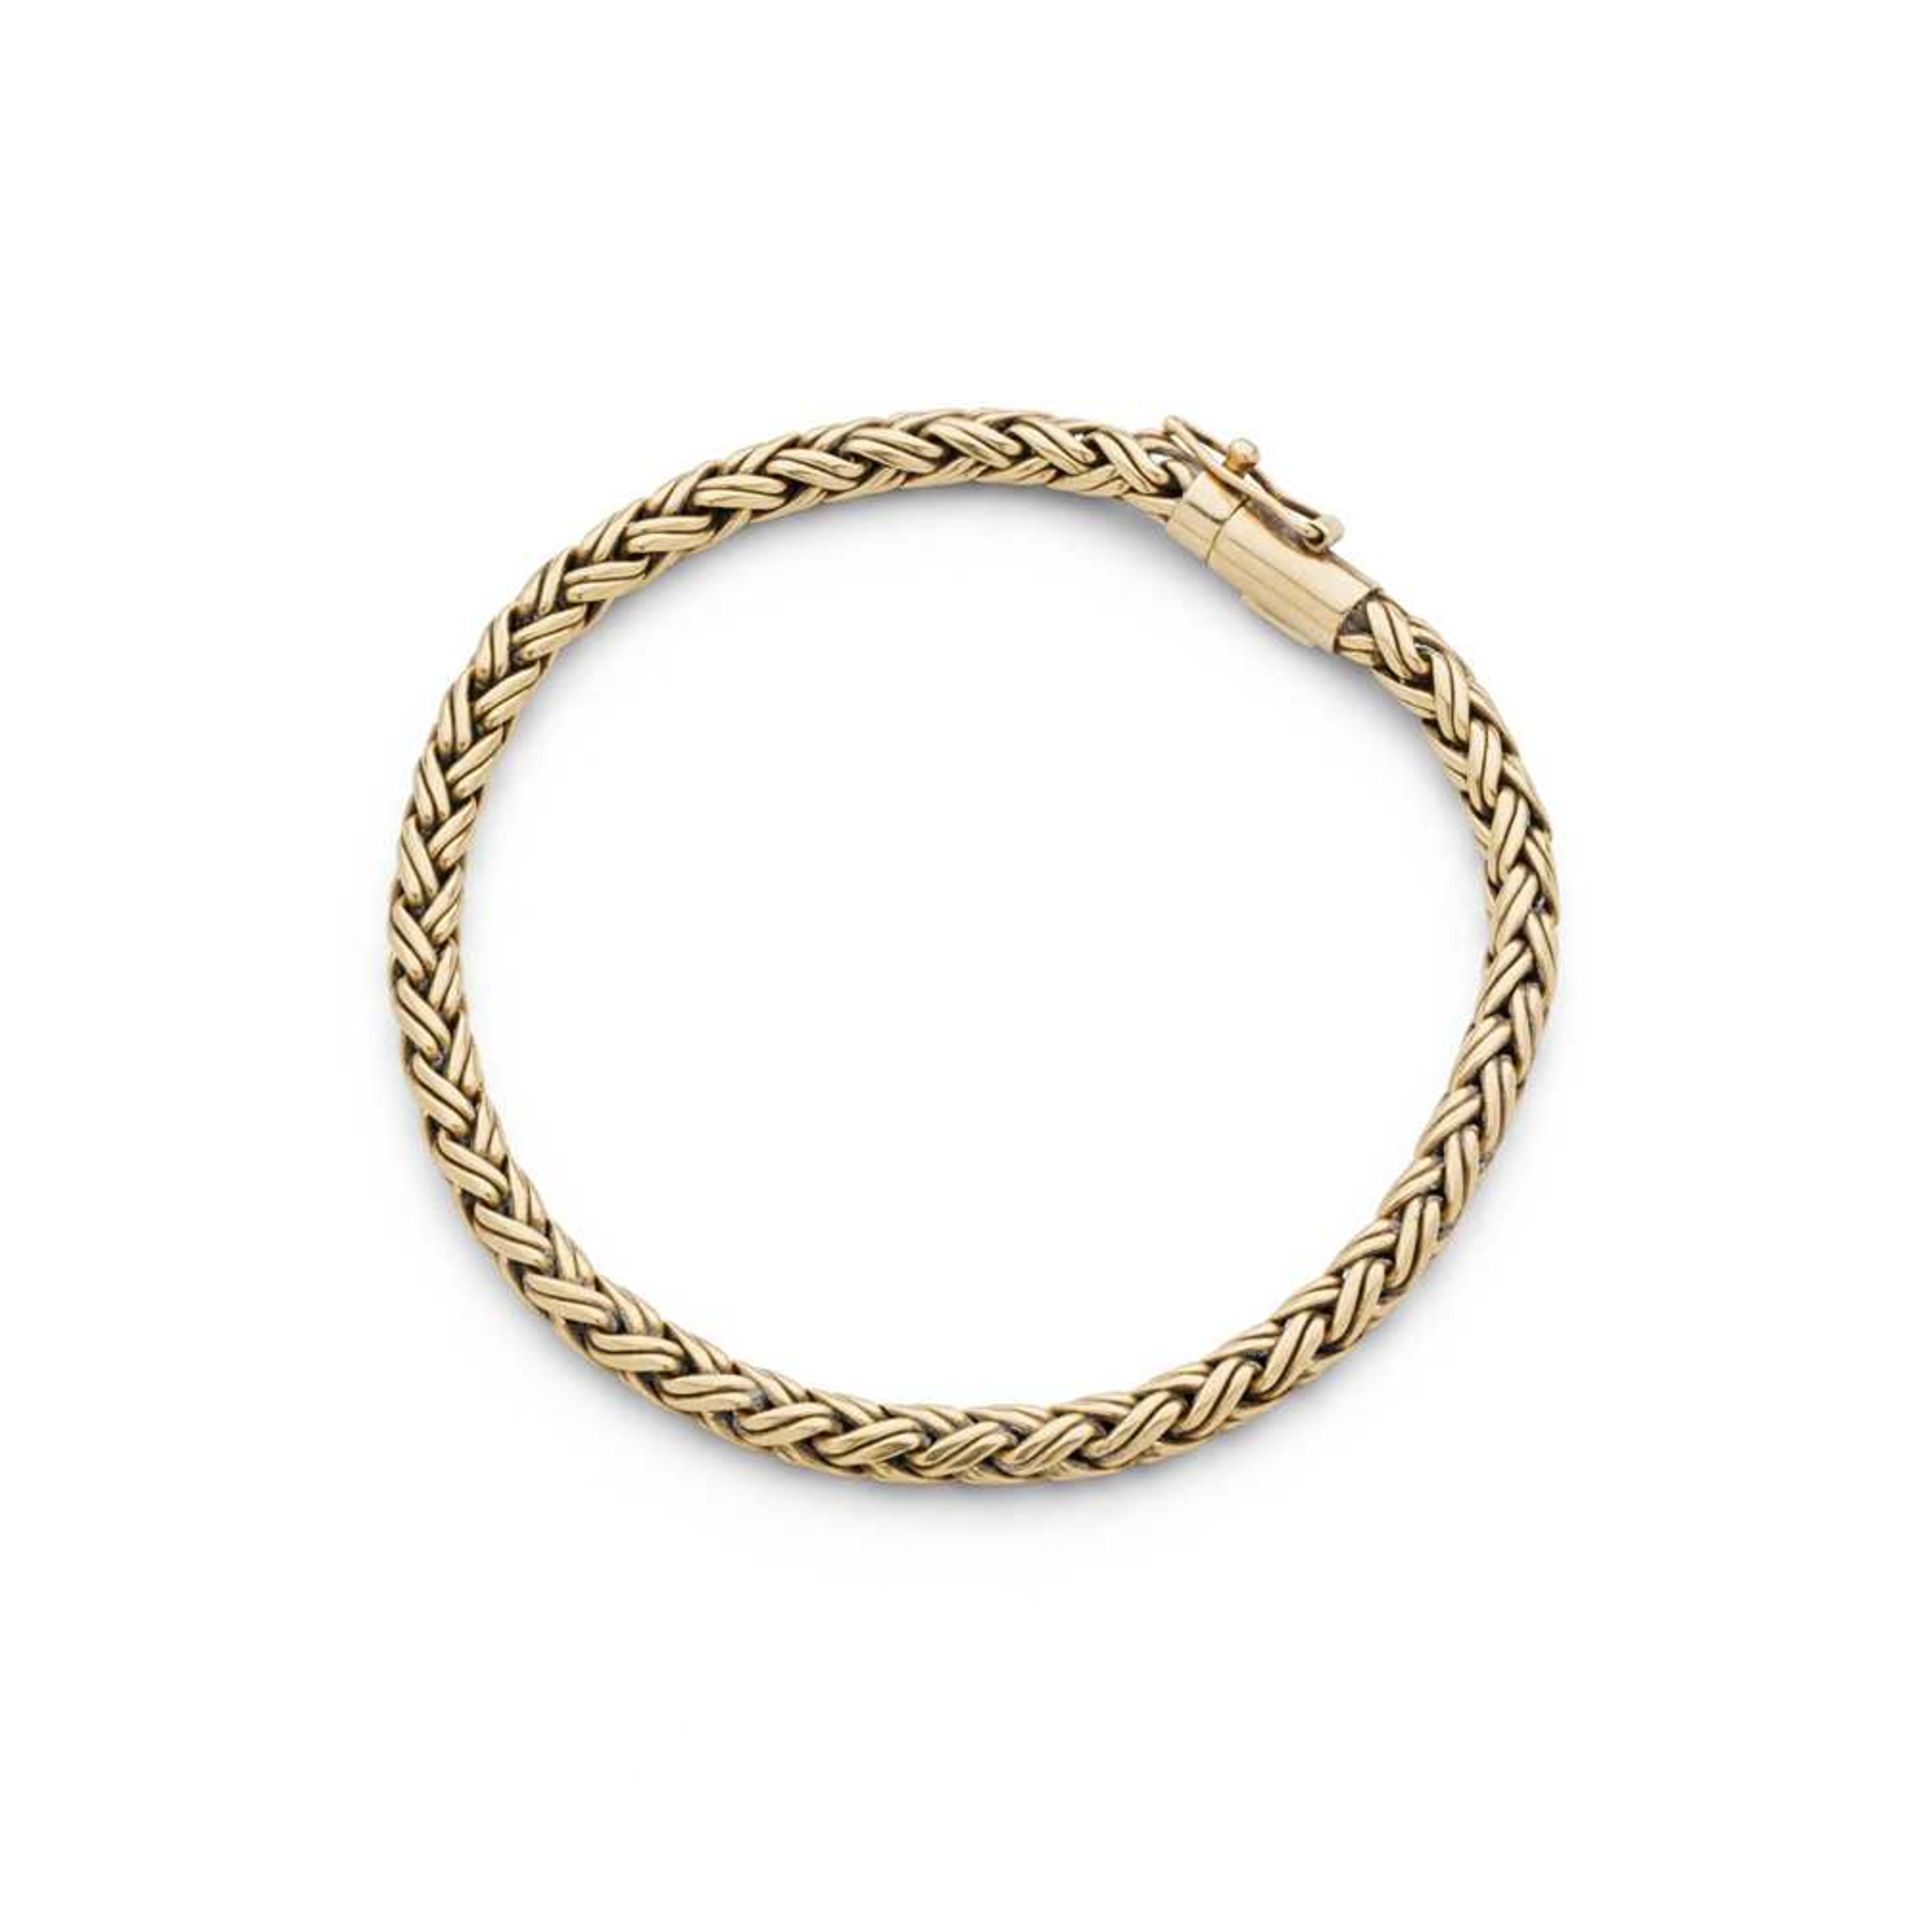 A bracelet, by Tiffany & Co